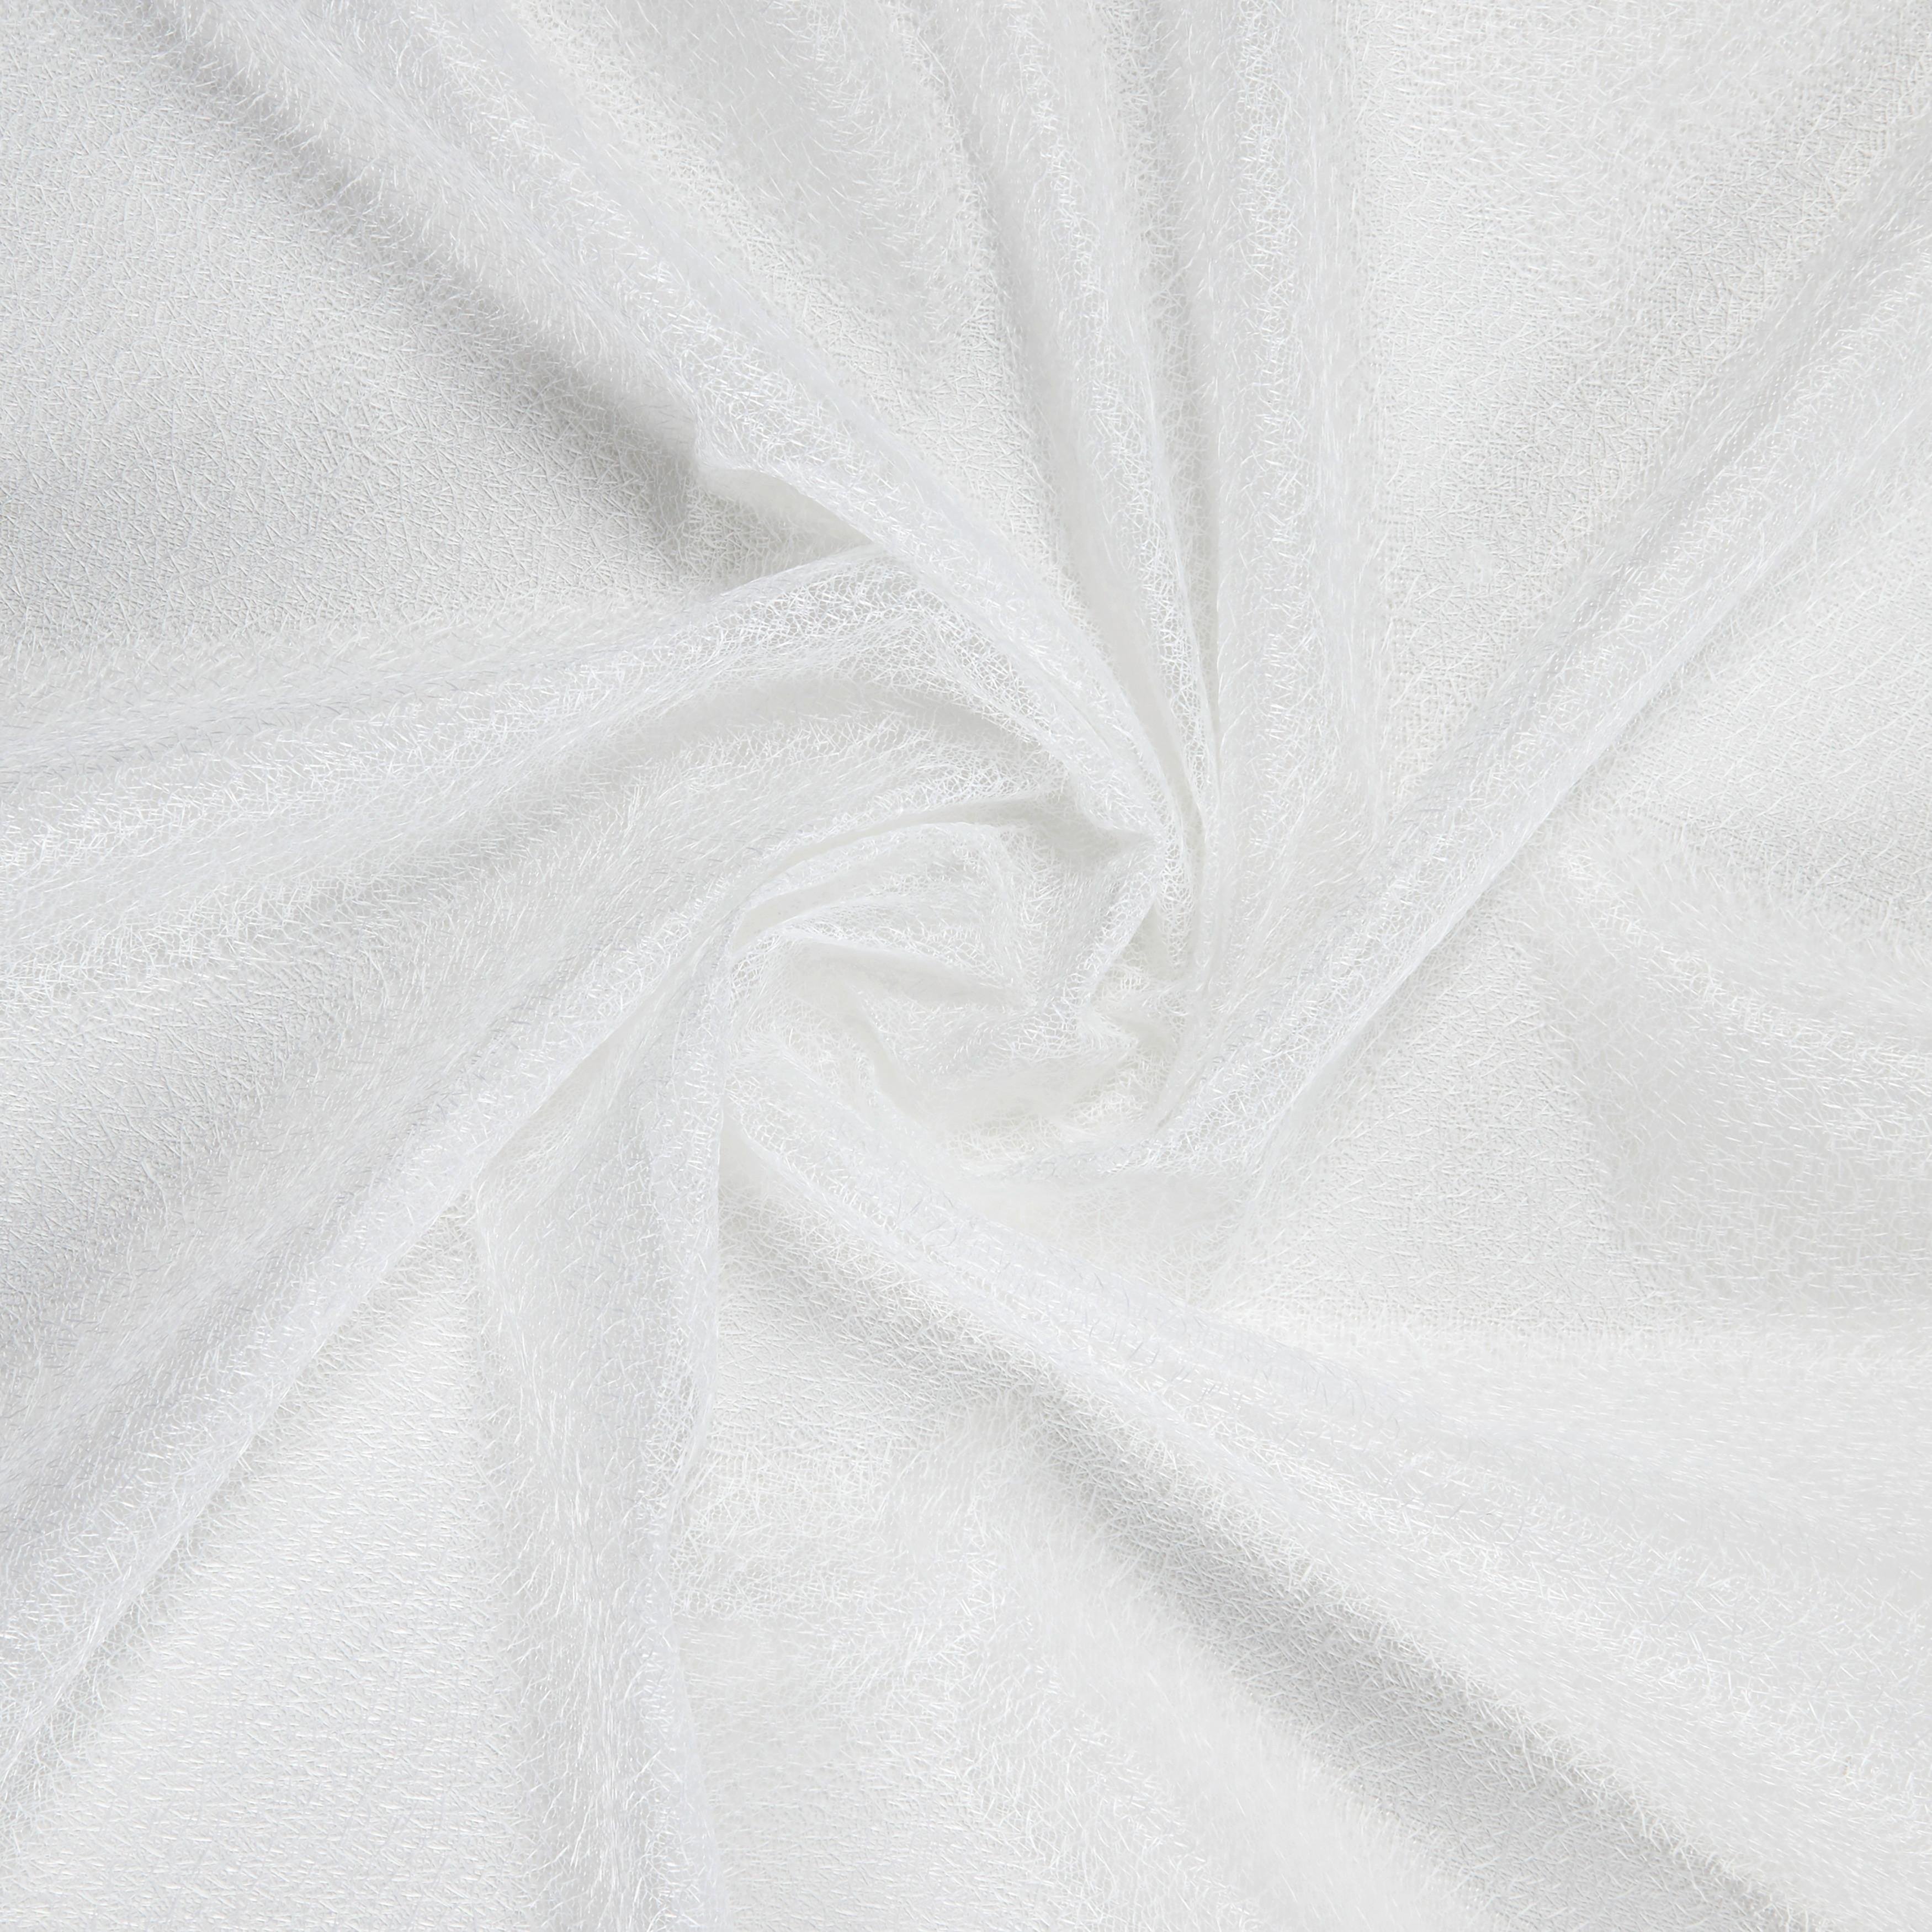 Készfüggöny Iceland 140/245 - Fehér, Textil (140/245cm) - Modern Living